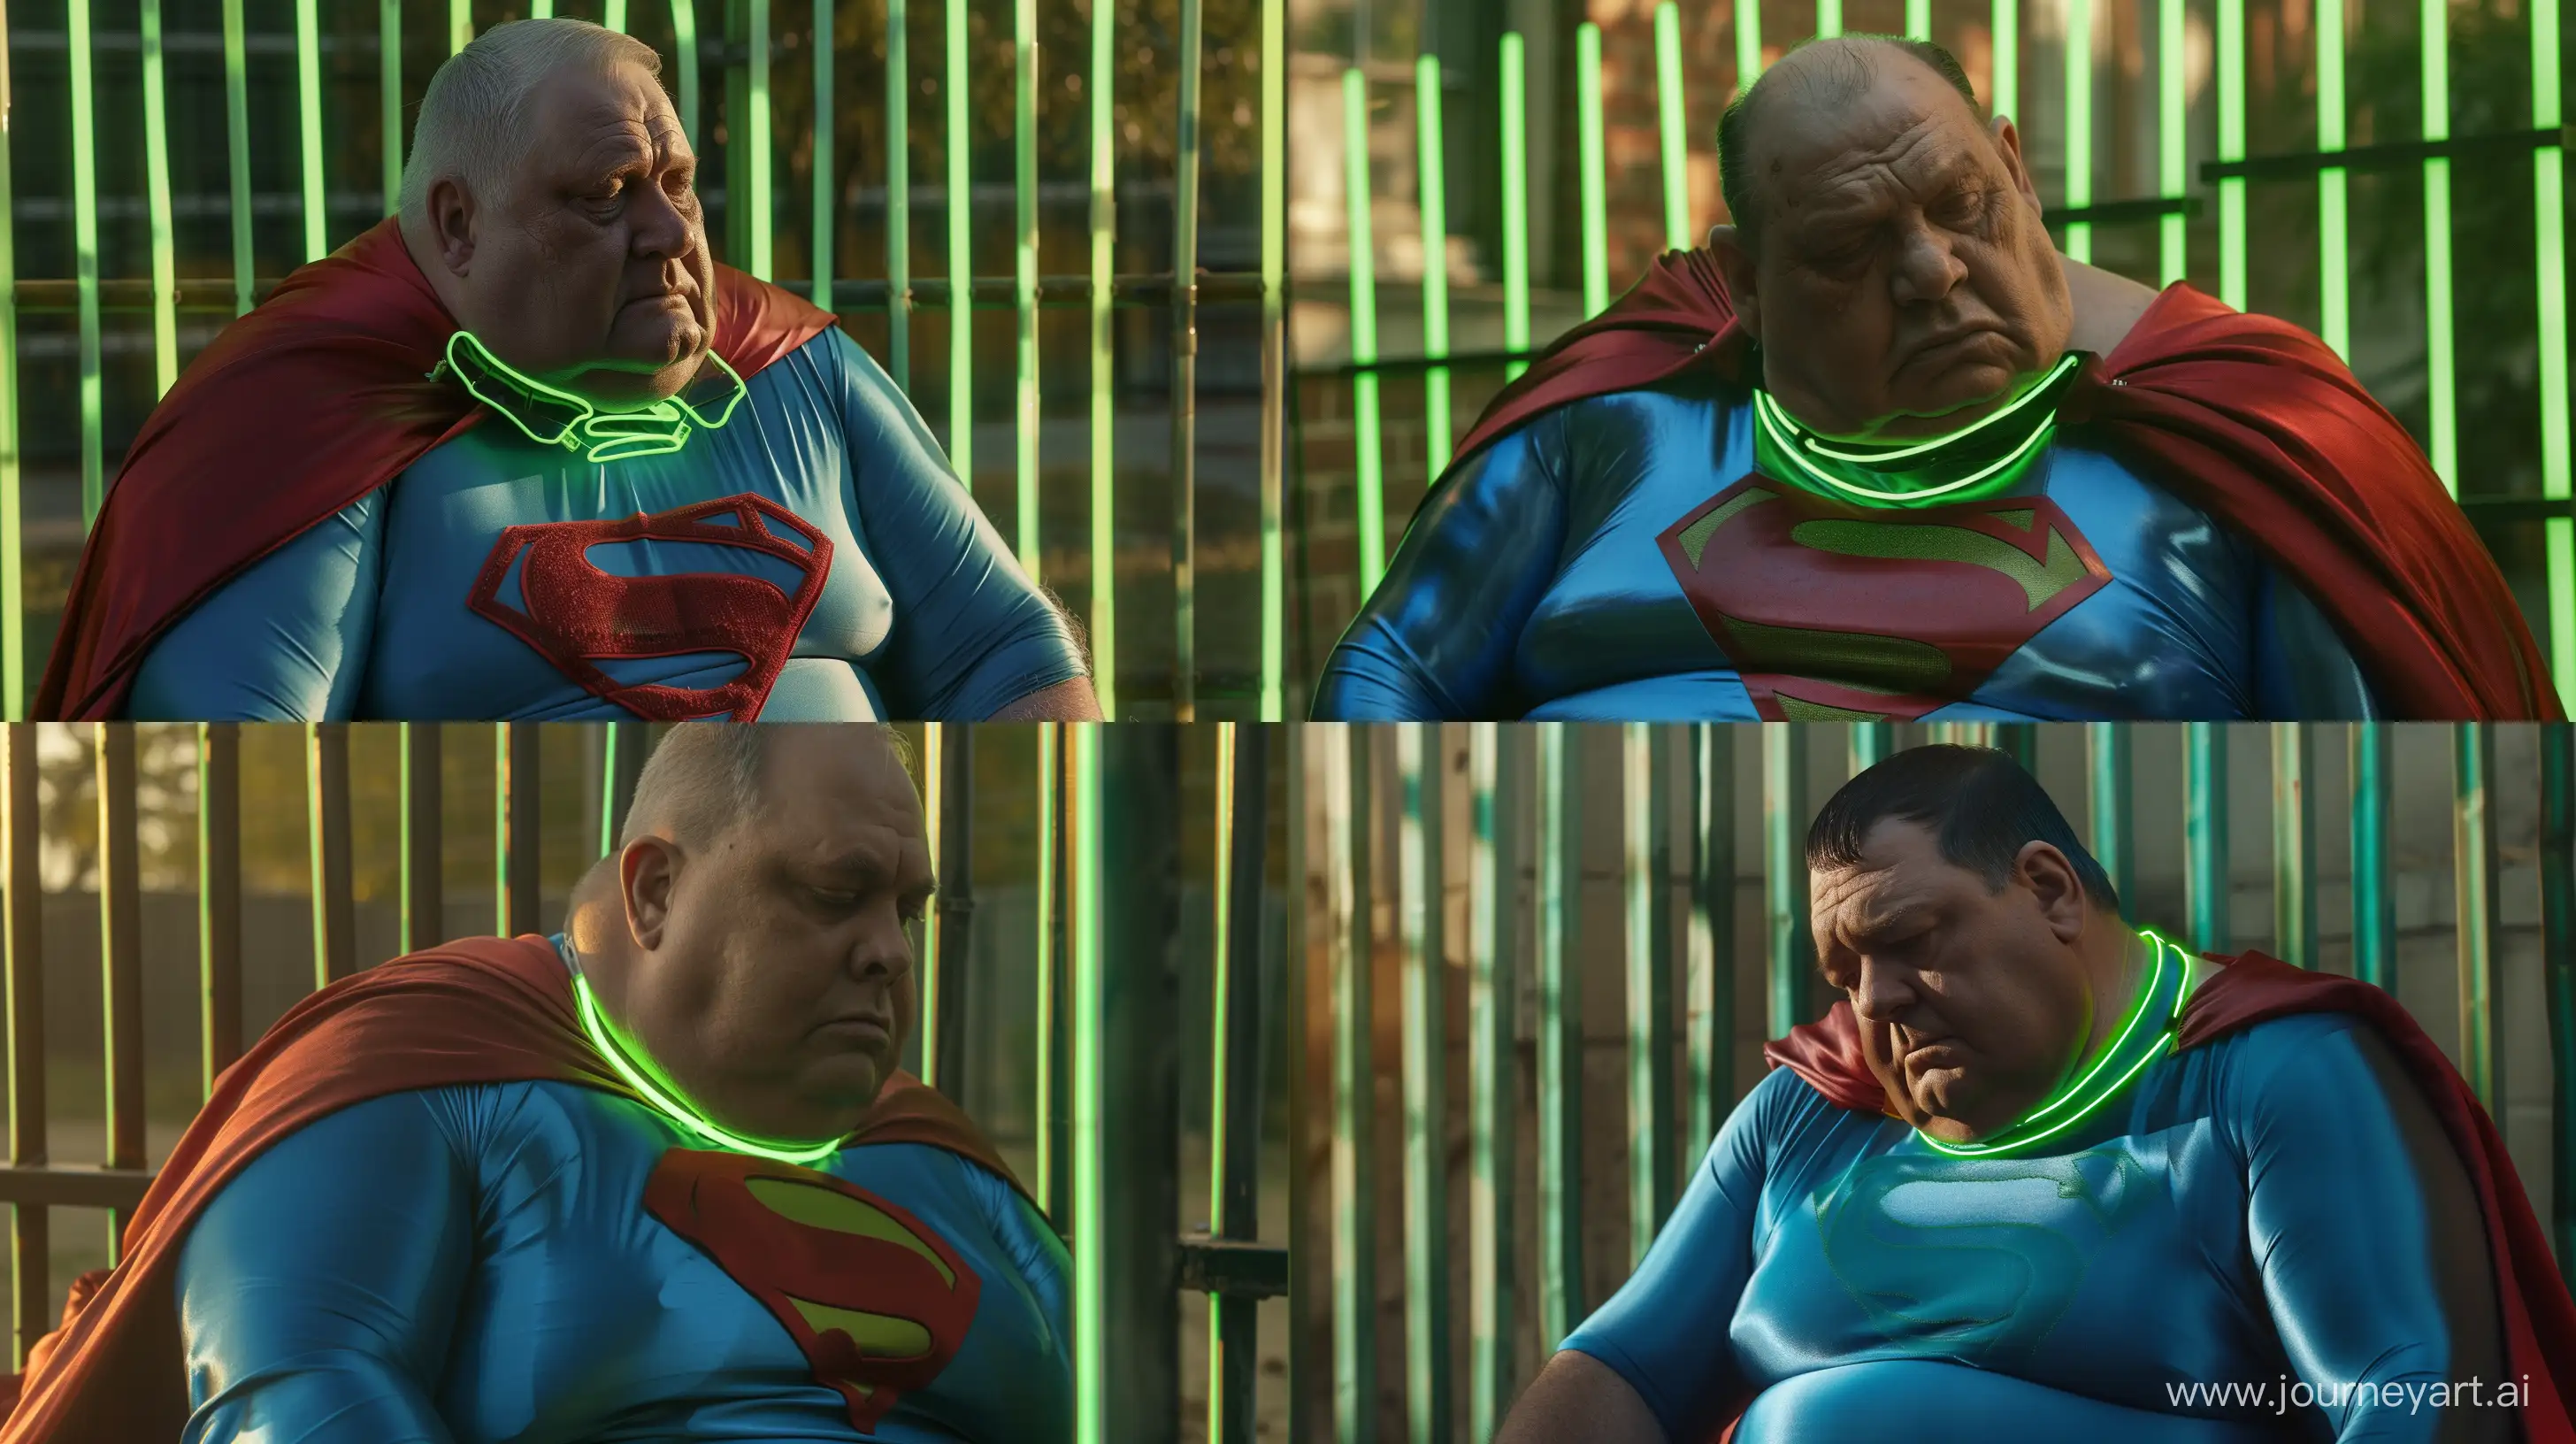 Elderly-Superman-Enjoys-Sunshine-in-Vibrant-Neon-Setting